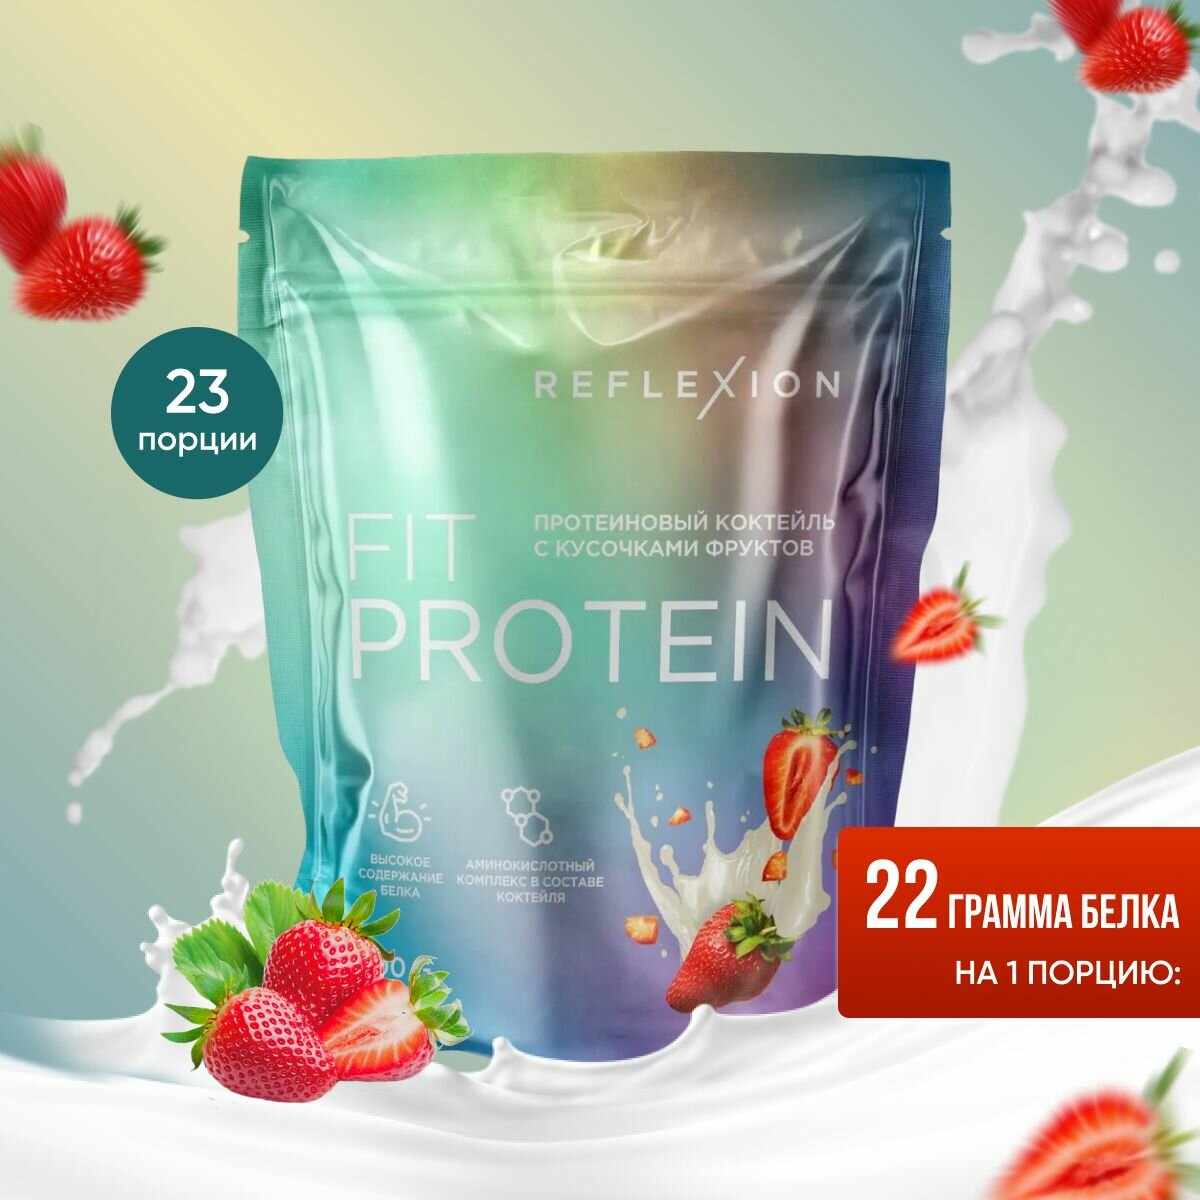 Протеин сывороточный, 700 гр, Reflexion Fit Protein 22 грамма белка (23 порции) вкус клубника (белковый коктейль, whey protein)